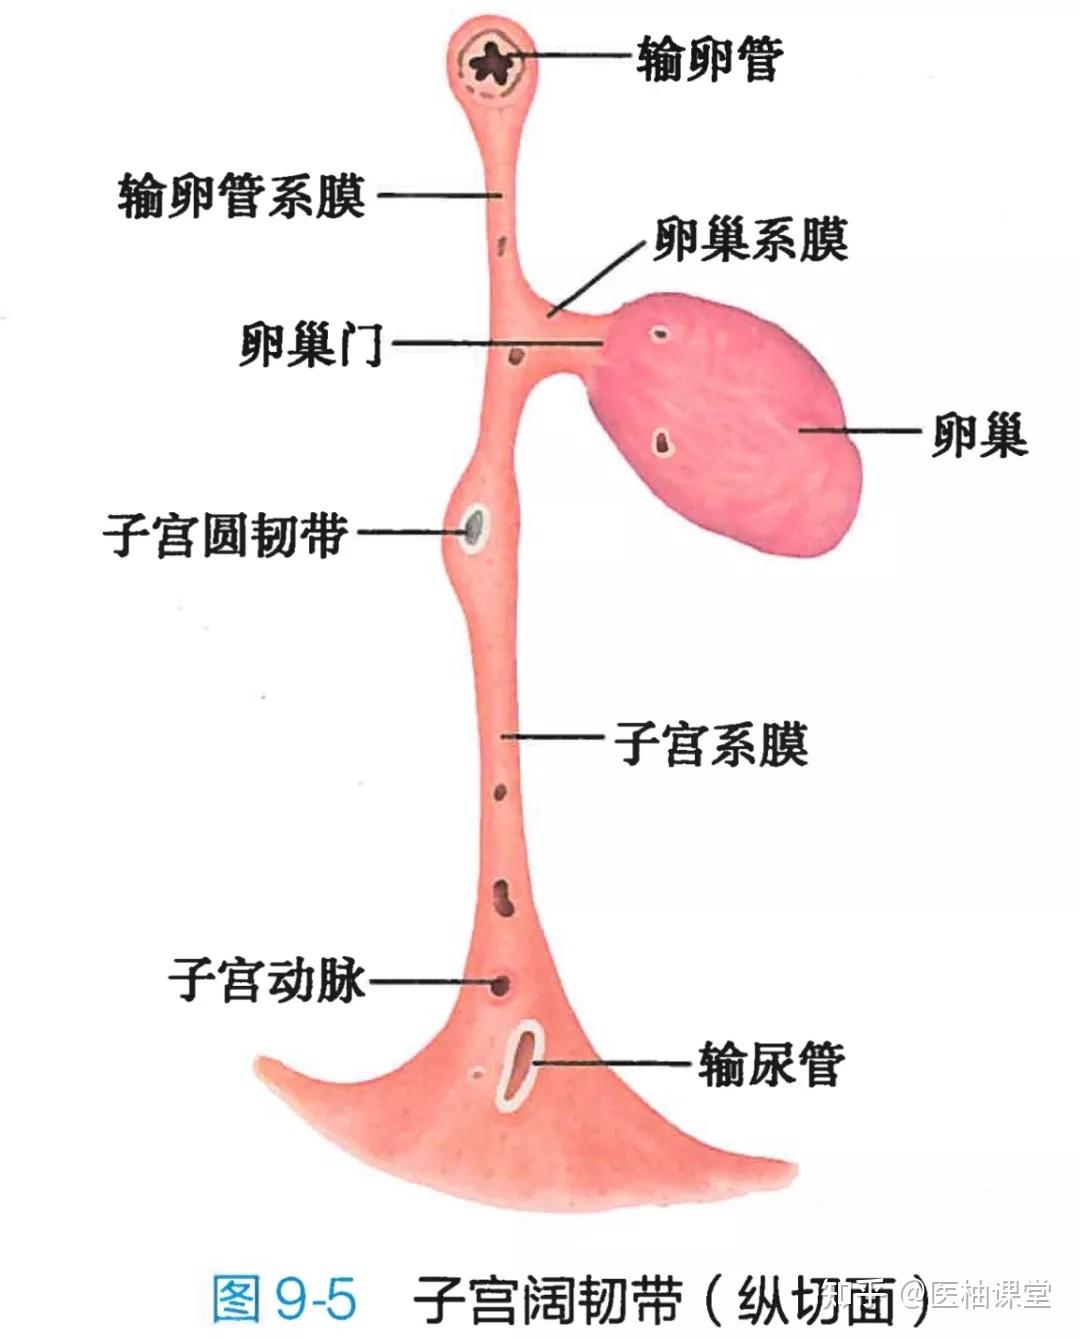 详细的生殖系统解剖图示注解_the_睾丸_附睾